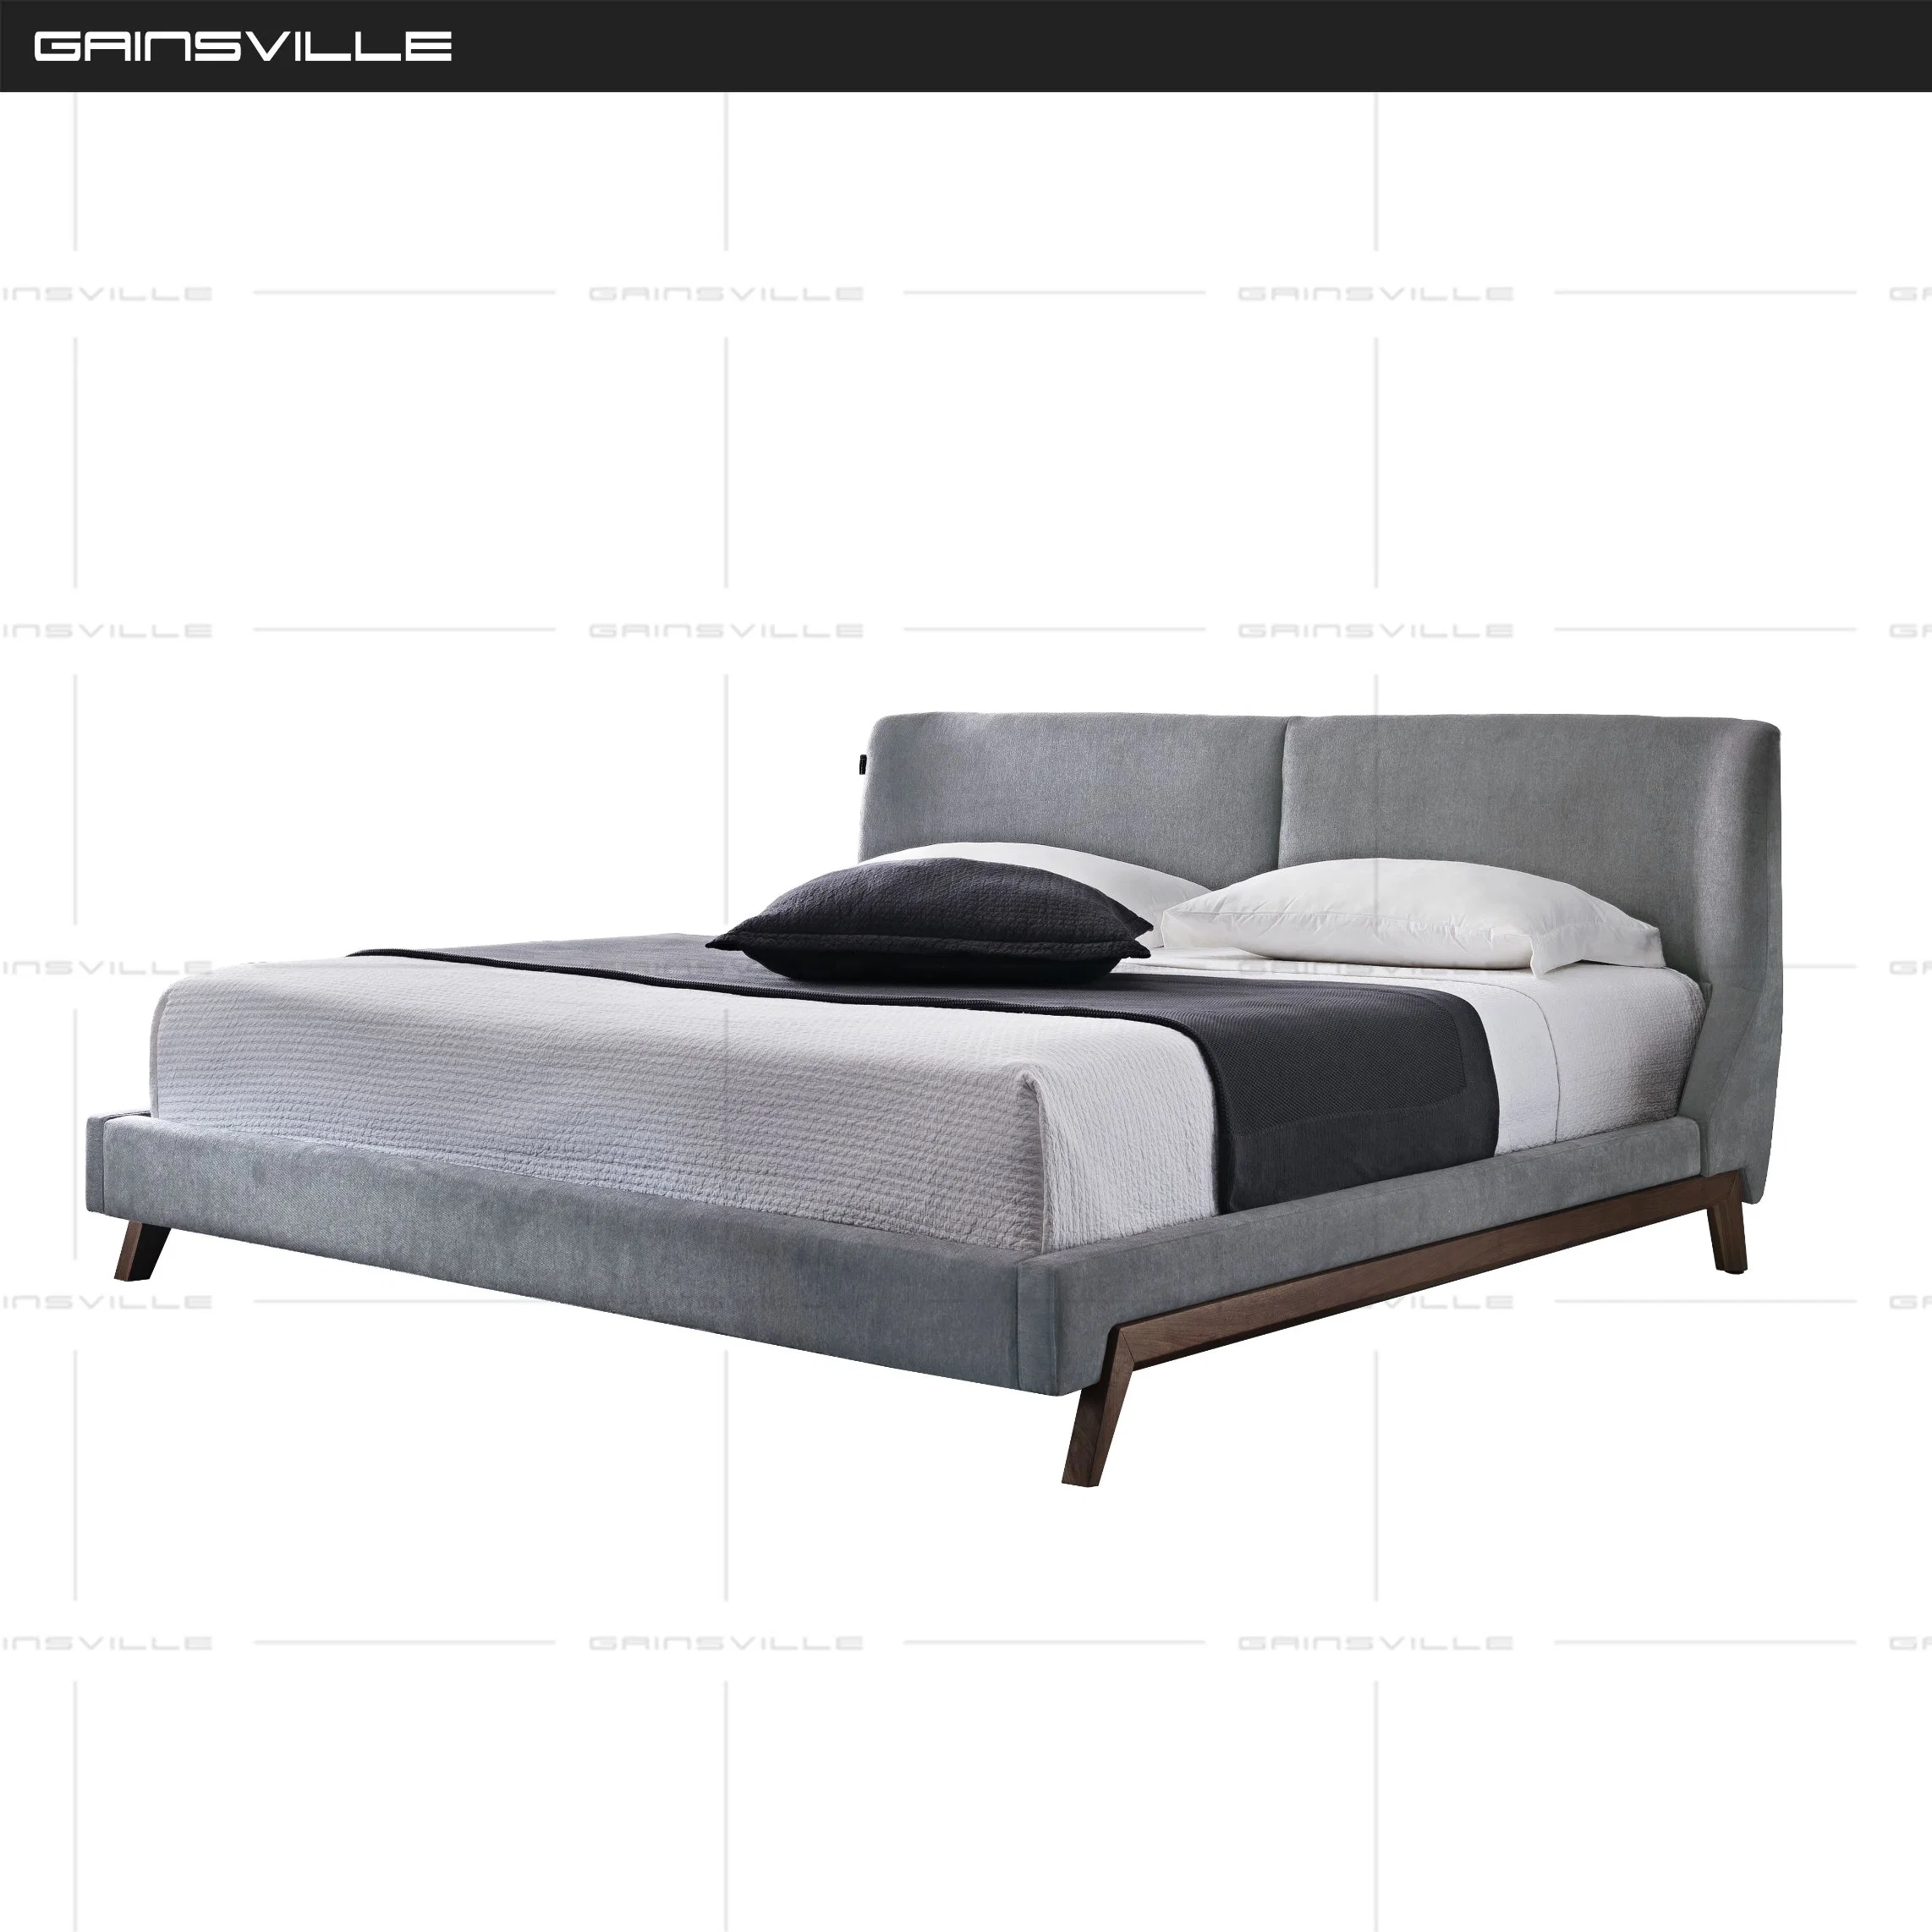 تصميم أمريكي عصري بالجملة إطار خشبي صلب ناعم السرير المنزل أثاث غرفة النوم Gc1705